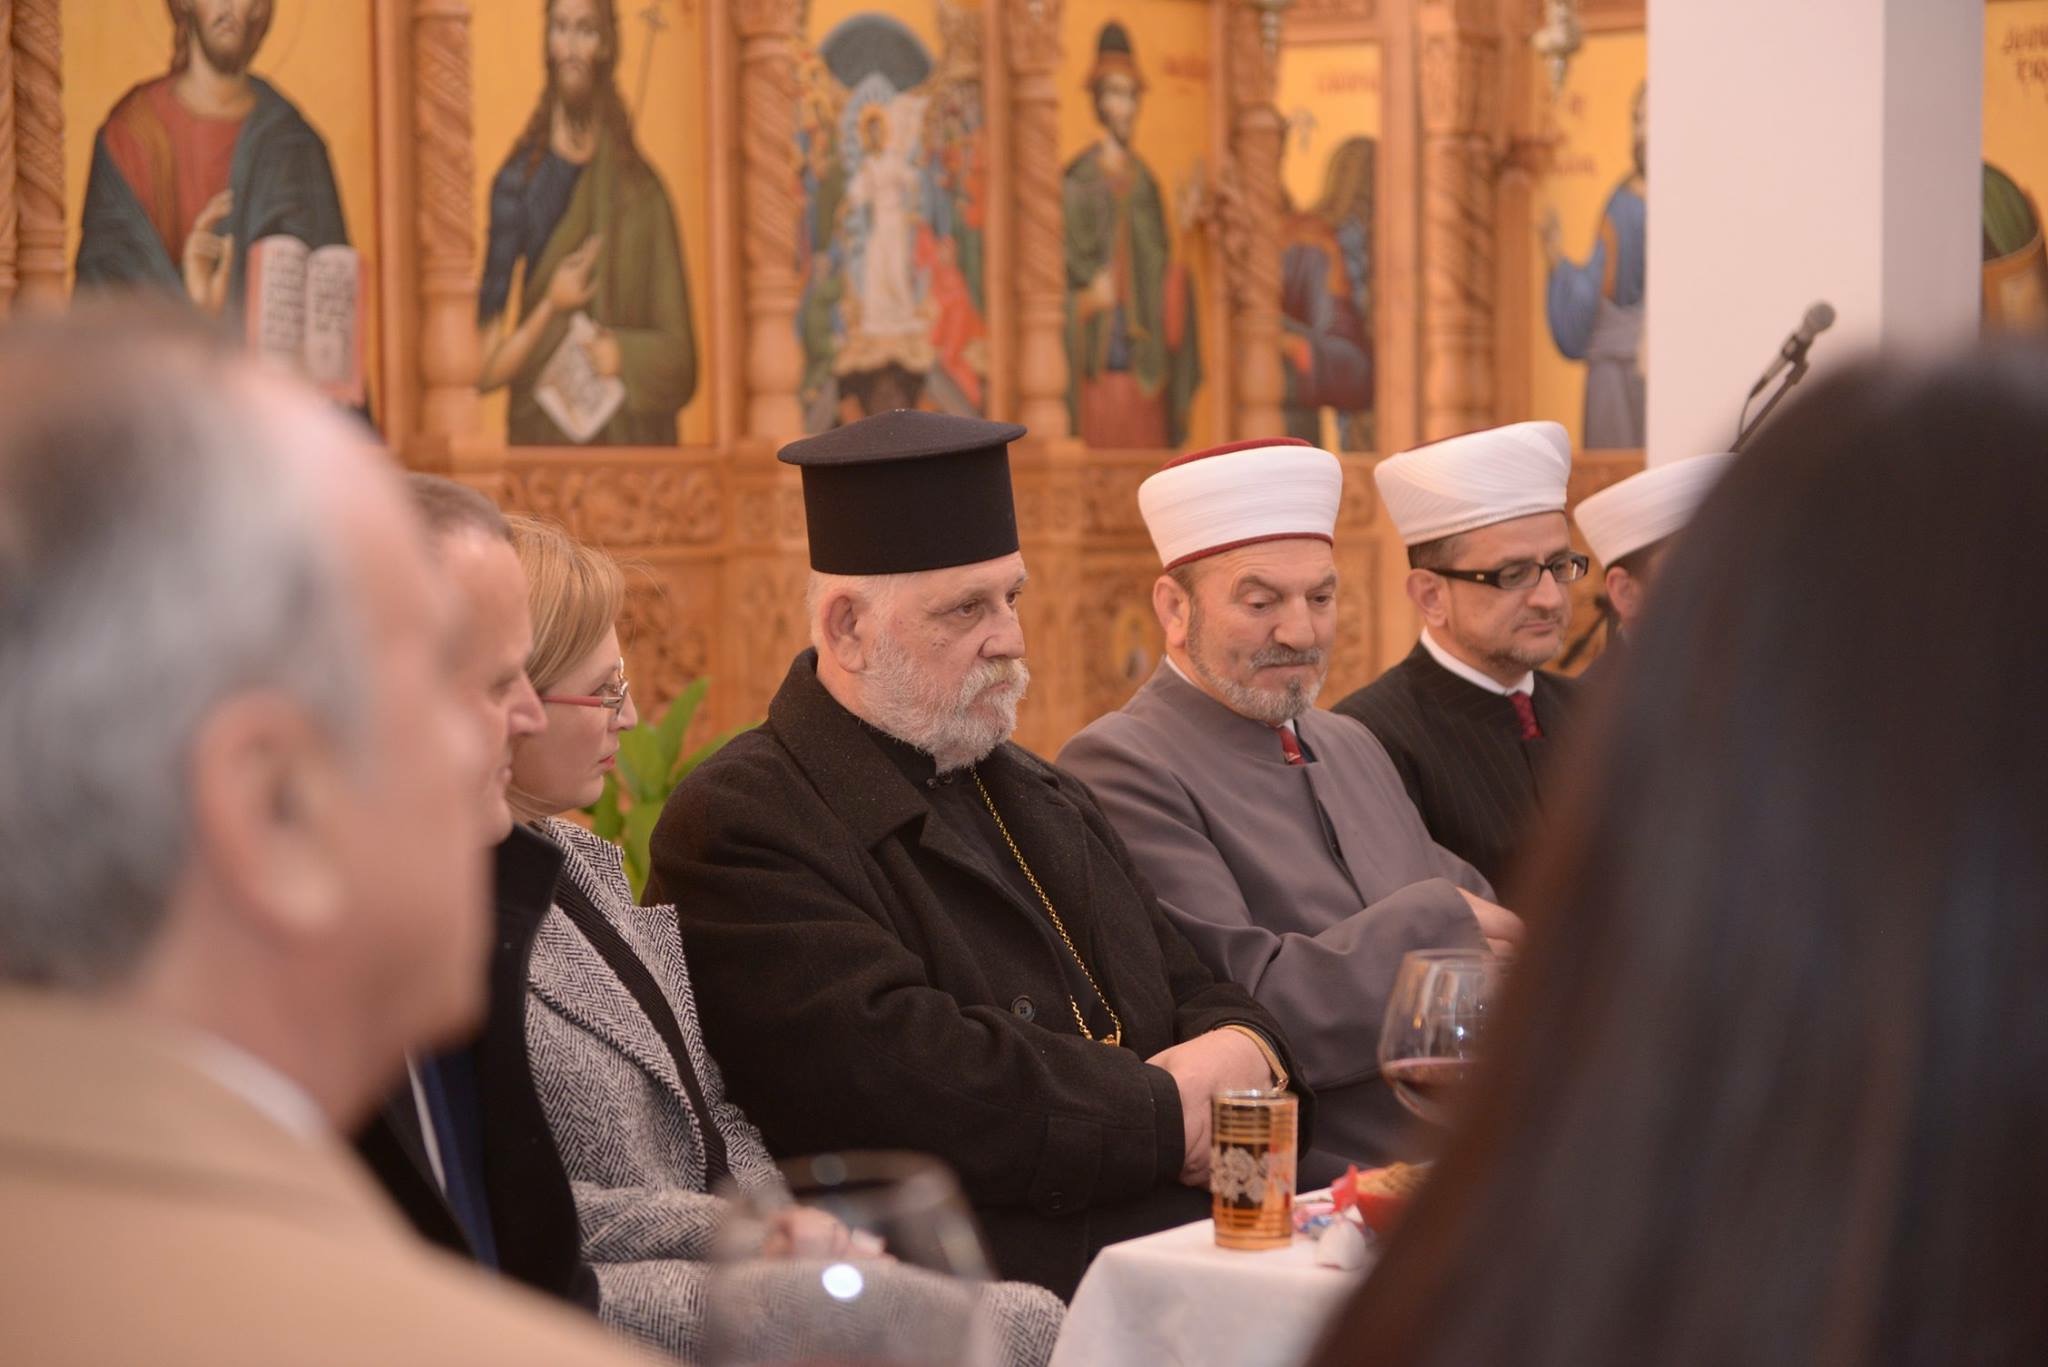 Përfaqësues të Myftinisë Shkodër zhvillojnë vizita në Kishën Ortodokse dhe Katolike të Shkodrës për festën e Krishtlindjes